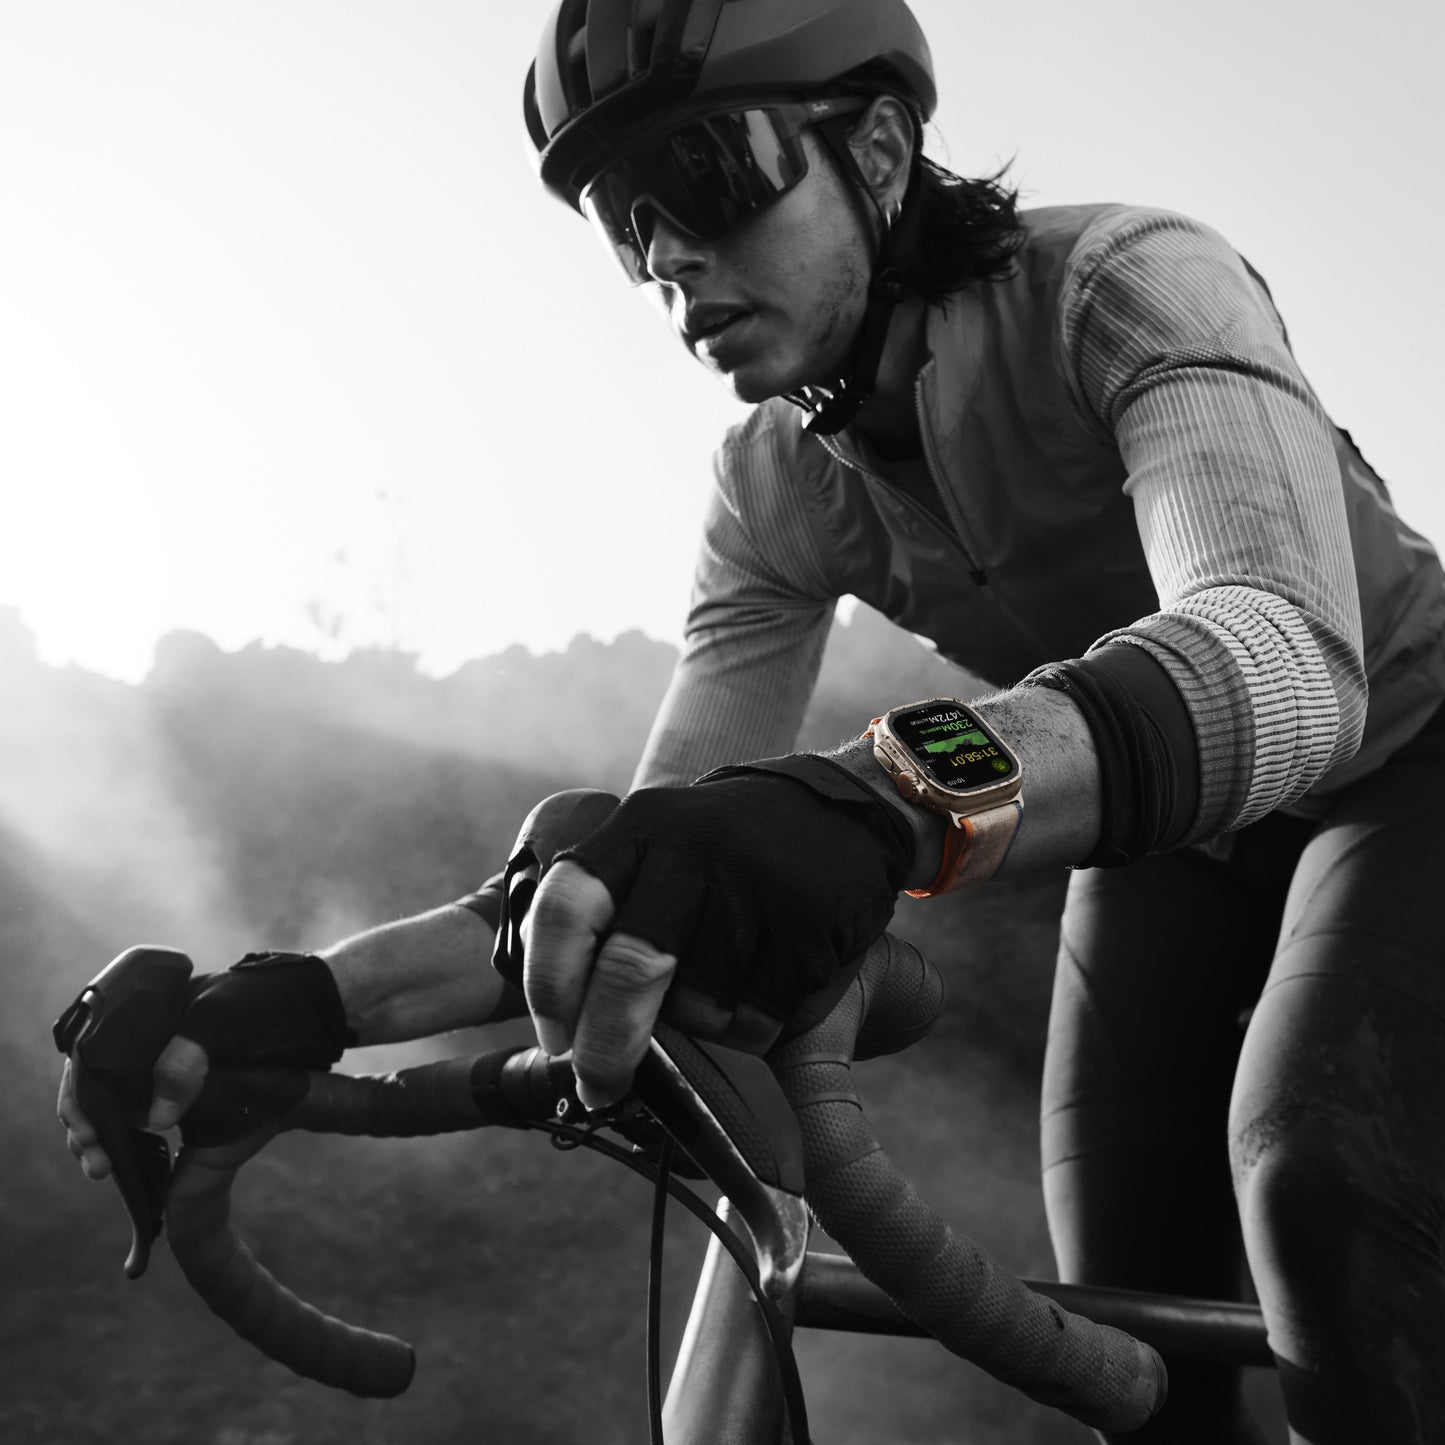 Apple Watch Ultra 2 (GPS + Cellular) - Caja de titanio de 49 mm - Correa Loop Trail verde/gris - Talla M/L